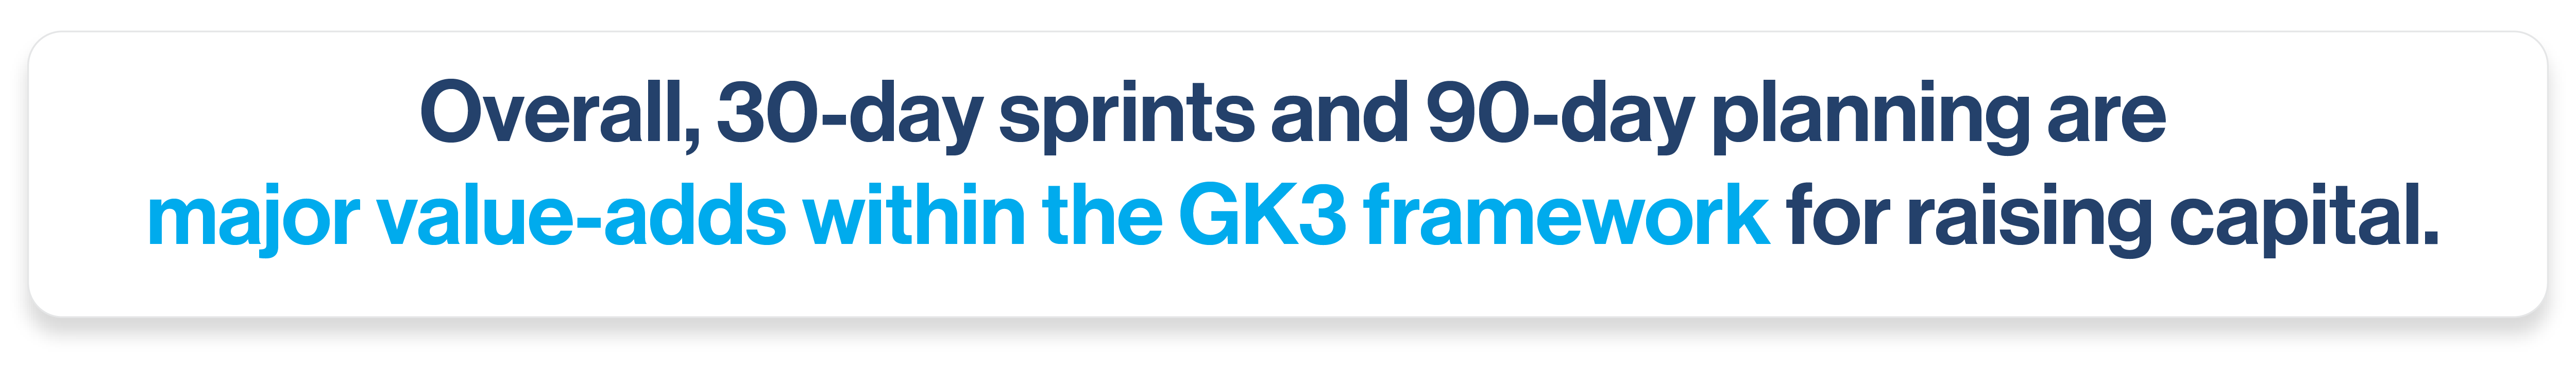 DRAFT - 23262 GK3 Blog 90 day plans 30 day sprints_GK3 framework